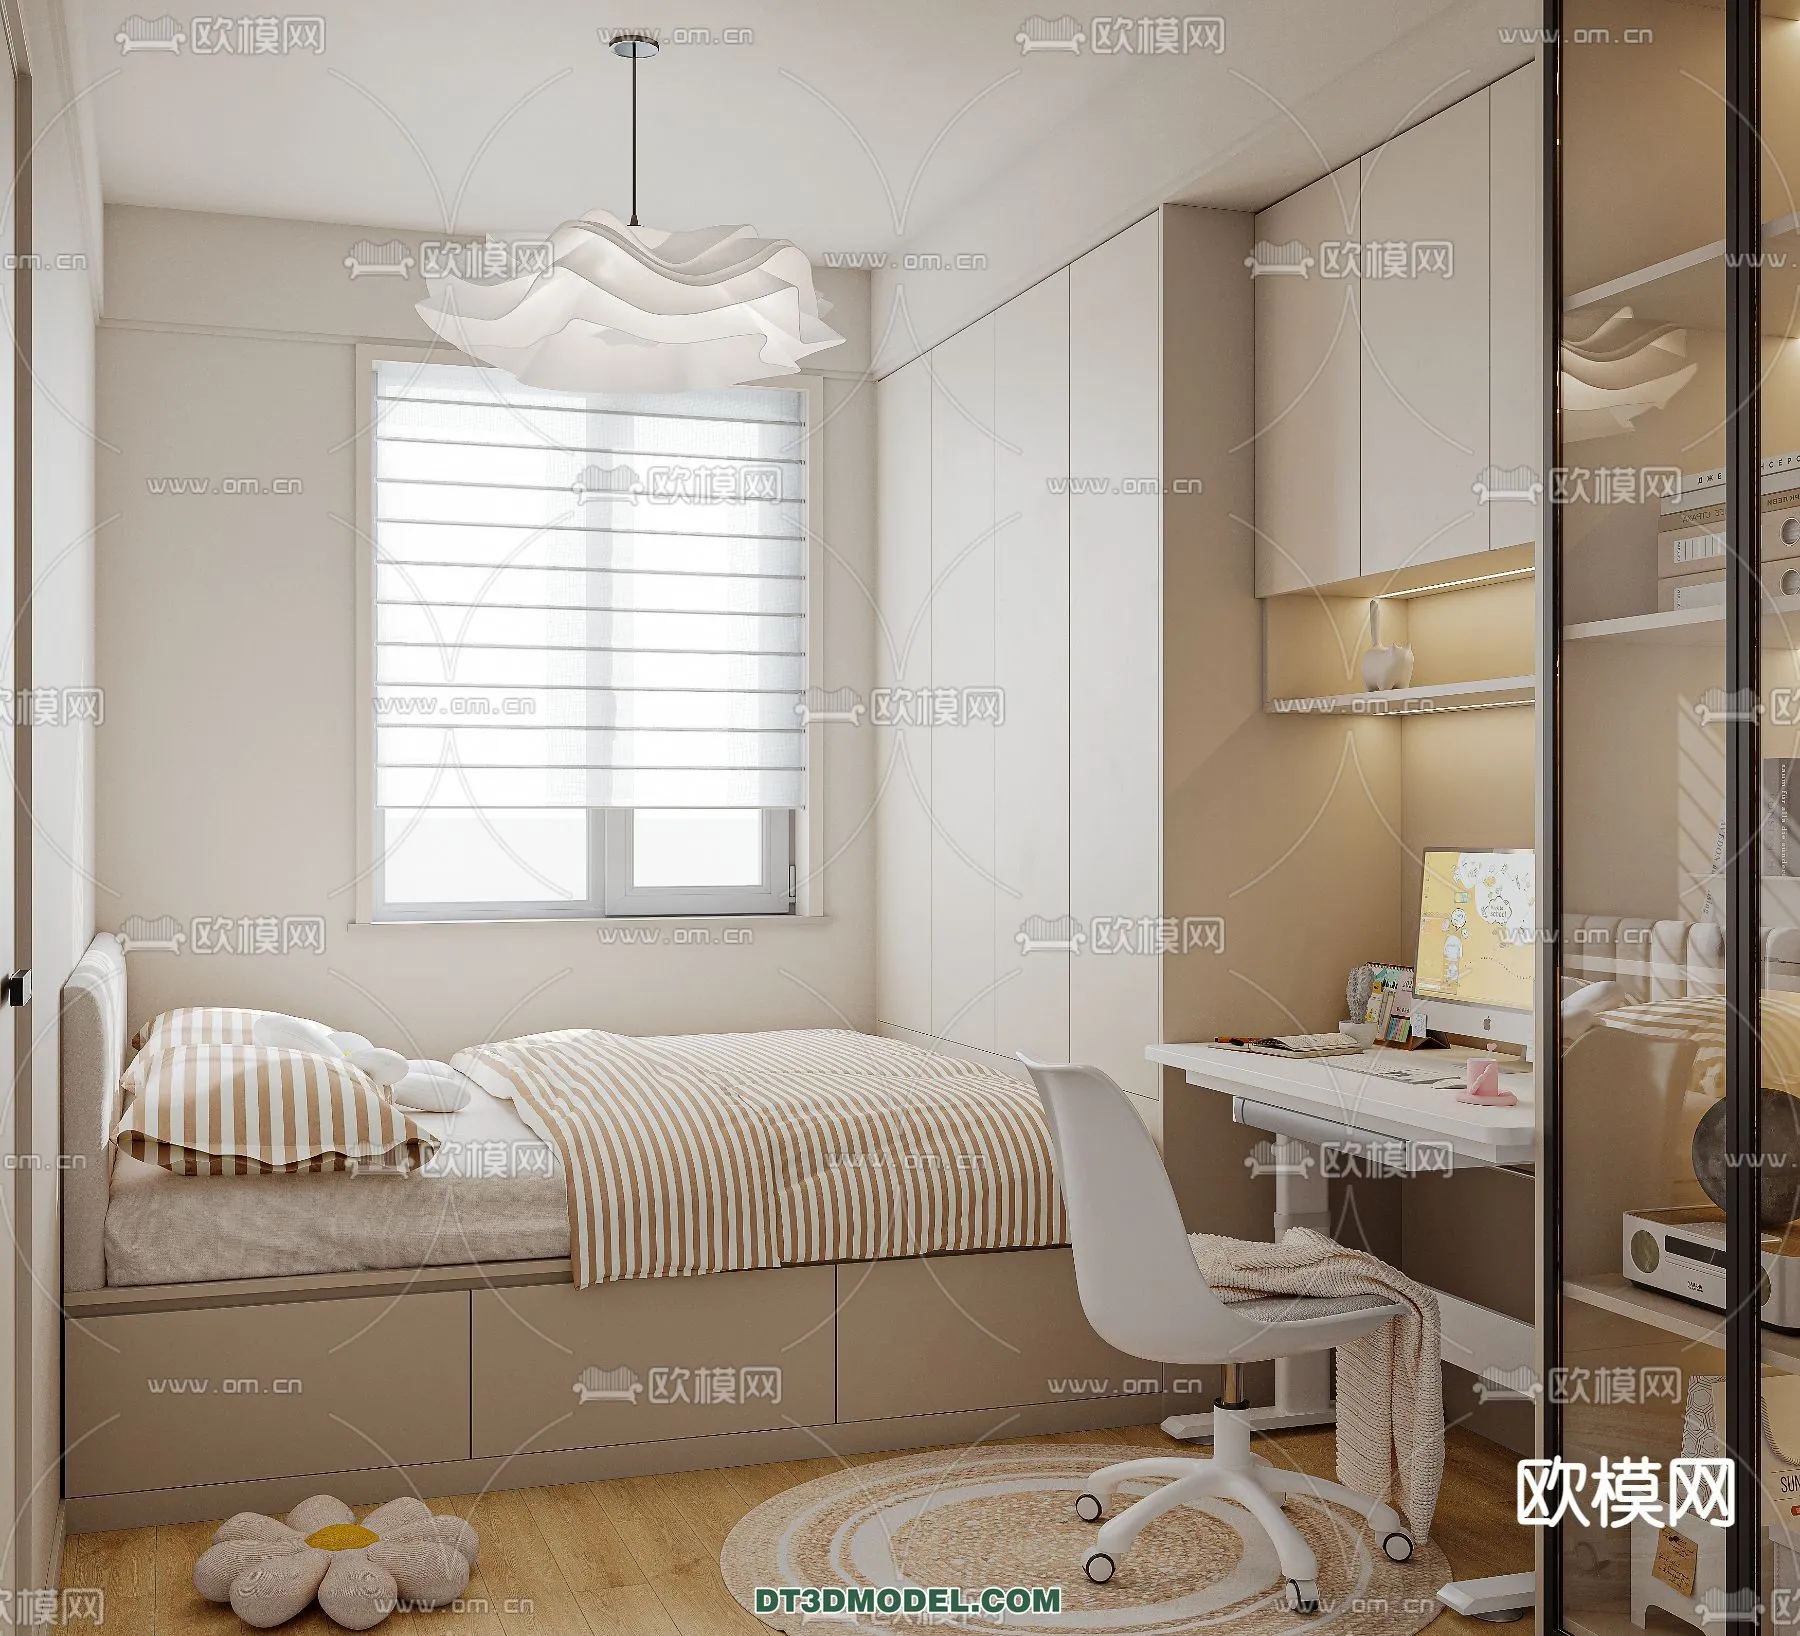 Tatami Bedroom – Japan Bedroom – 3D Scene – 011